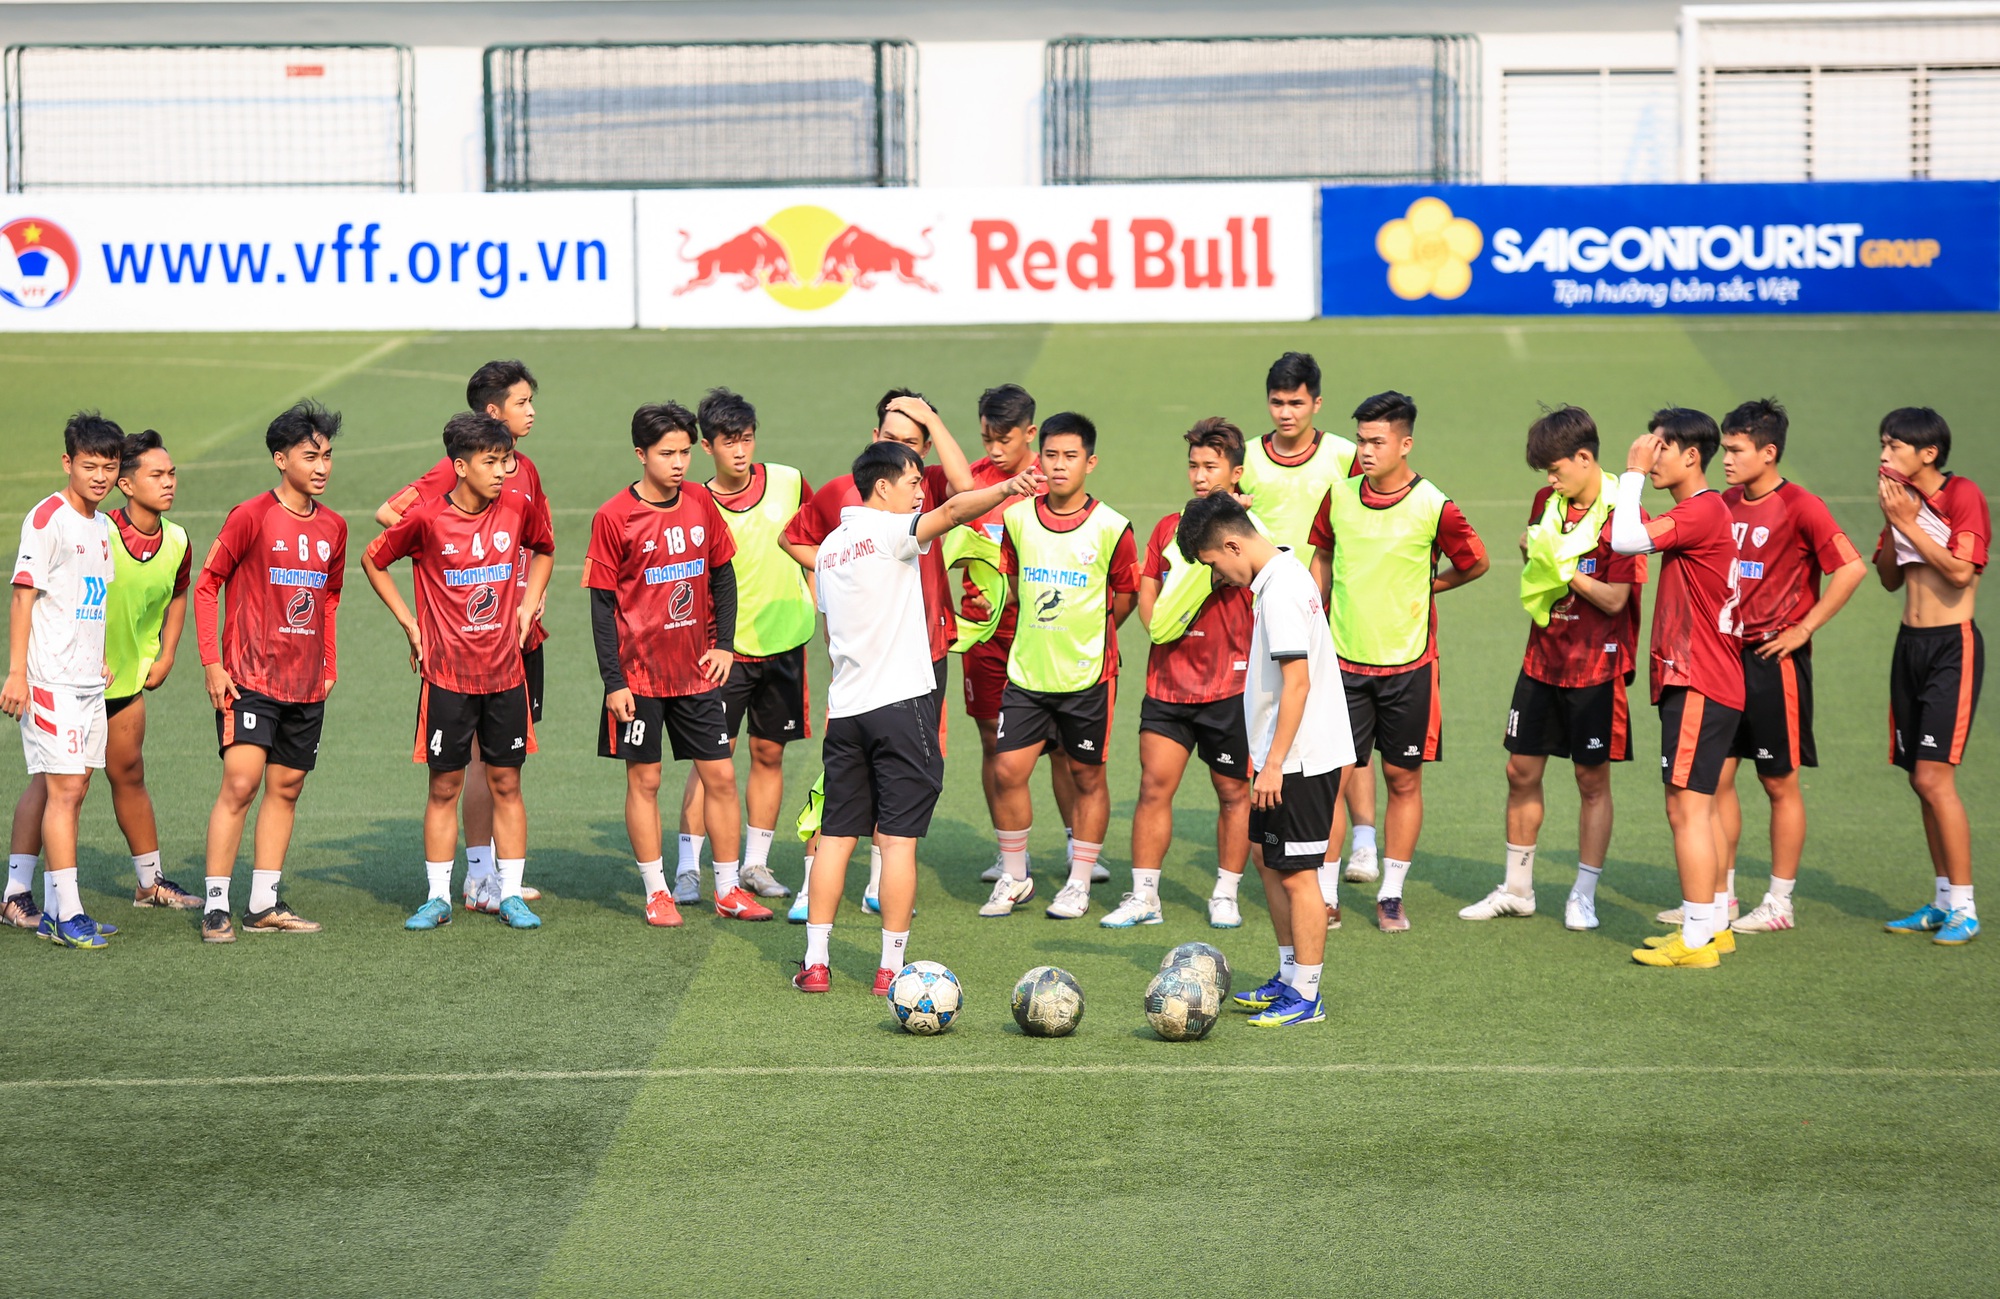 ĐH Văn Lang sẵn sàng cho trận mở màn VCK giải bóng đá Thanh NIên Sinhg viên Việt Nam lần 1 năm 2023 - Cúp Café de Măng Đen